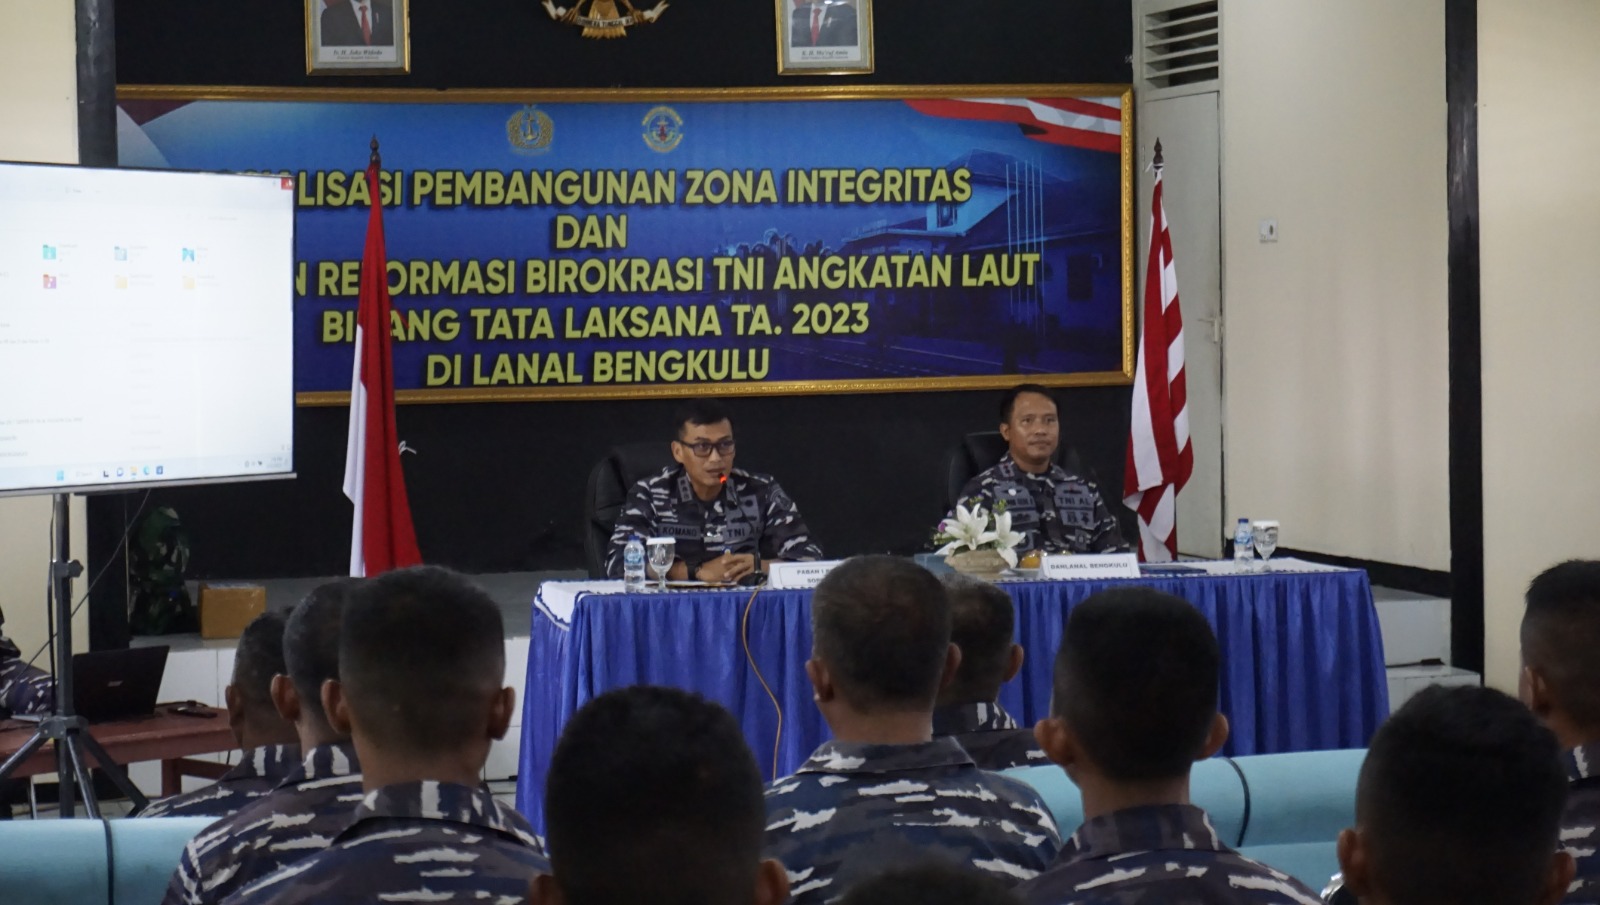 Tim Mabesal ke Lanal Bengkulu, Tekankan Reformasi Birokrasi dan Zona Integritas 